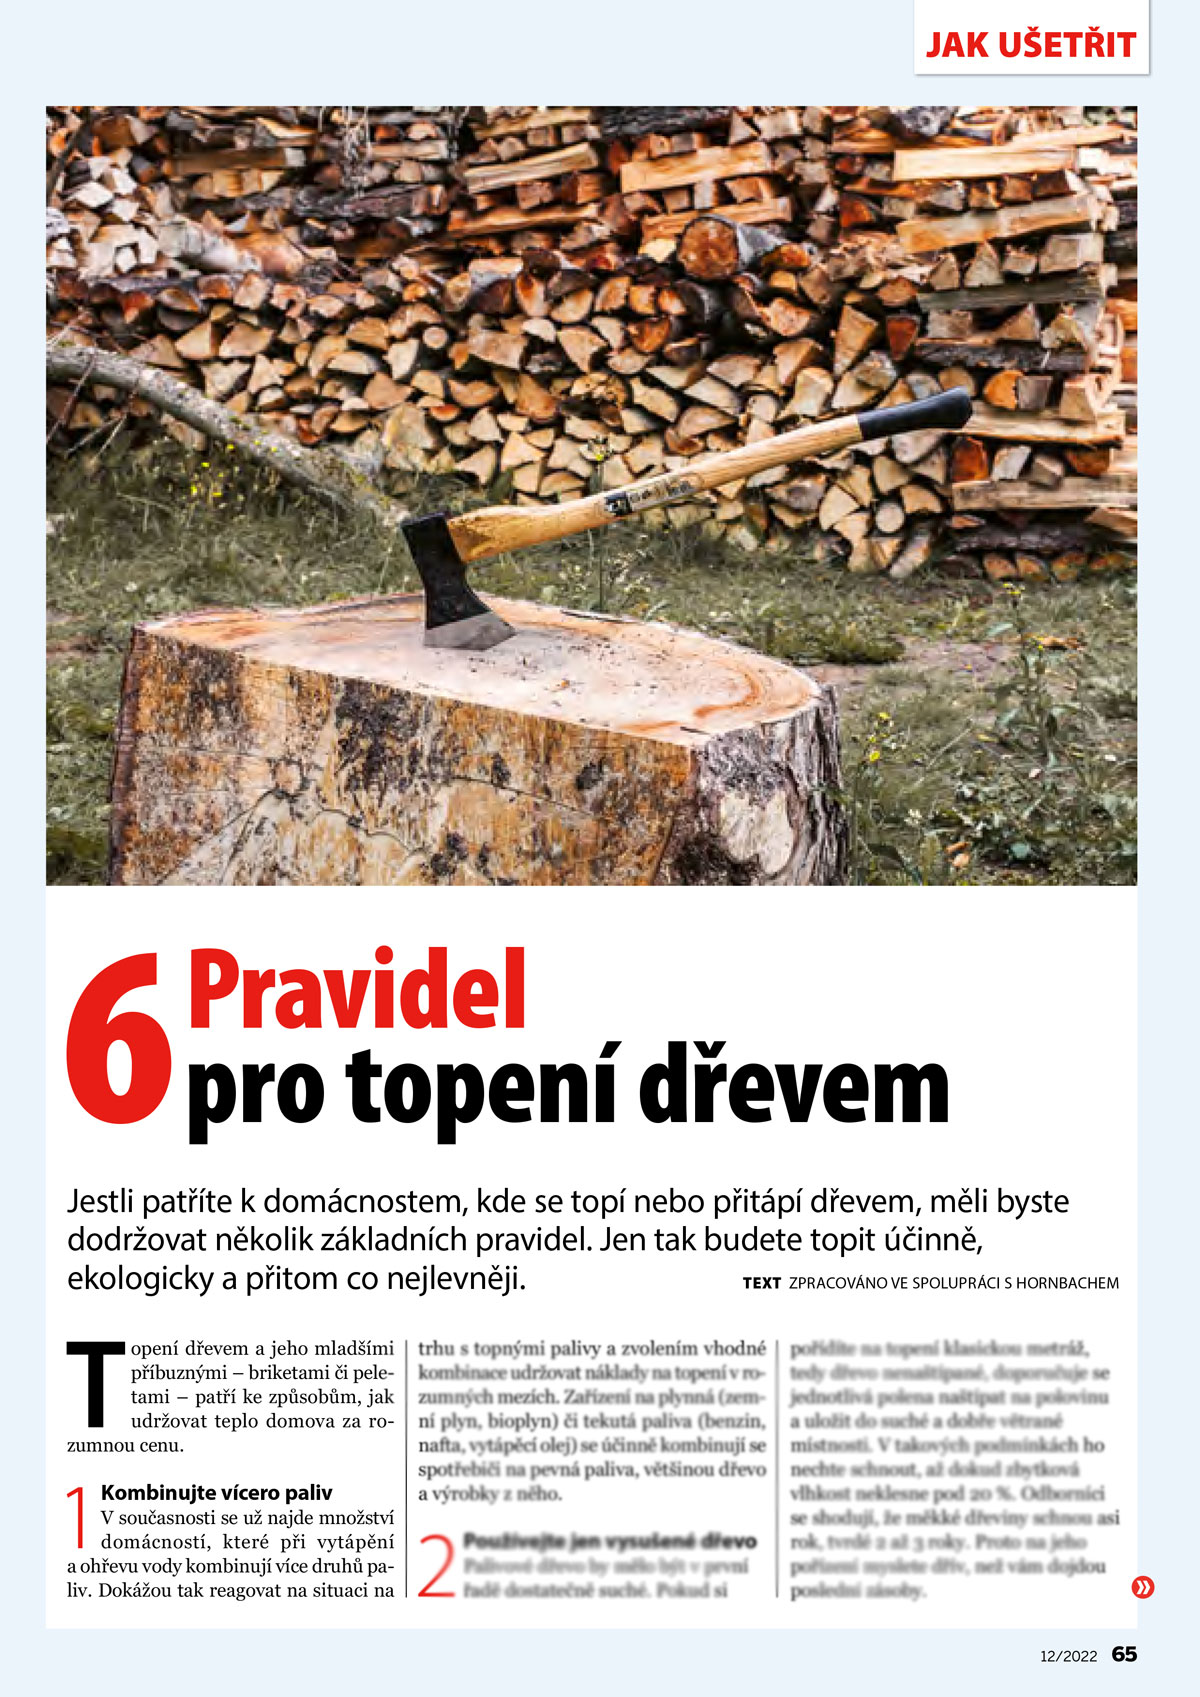 Náhled článku Šest pravidel pro topení dřevem